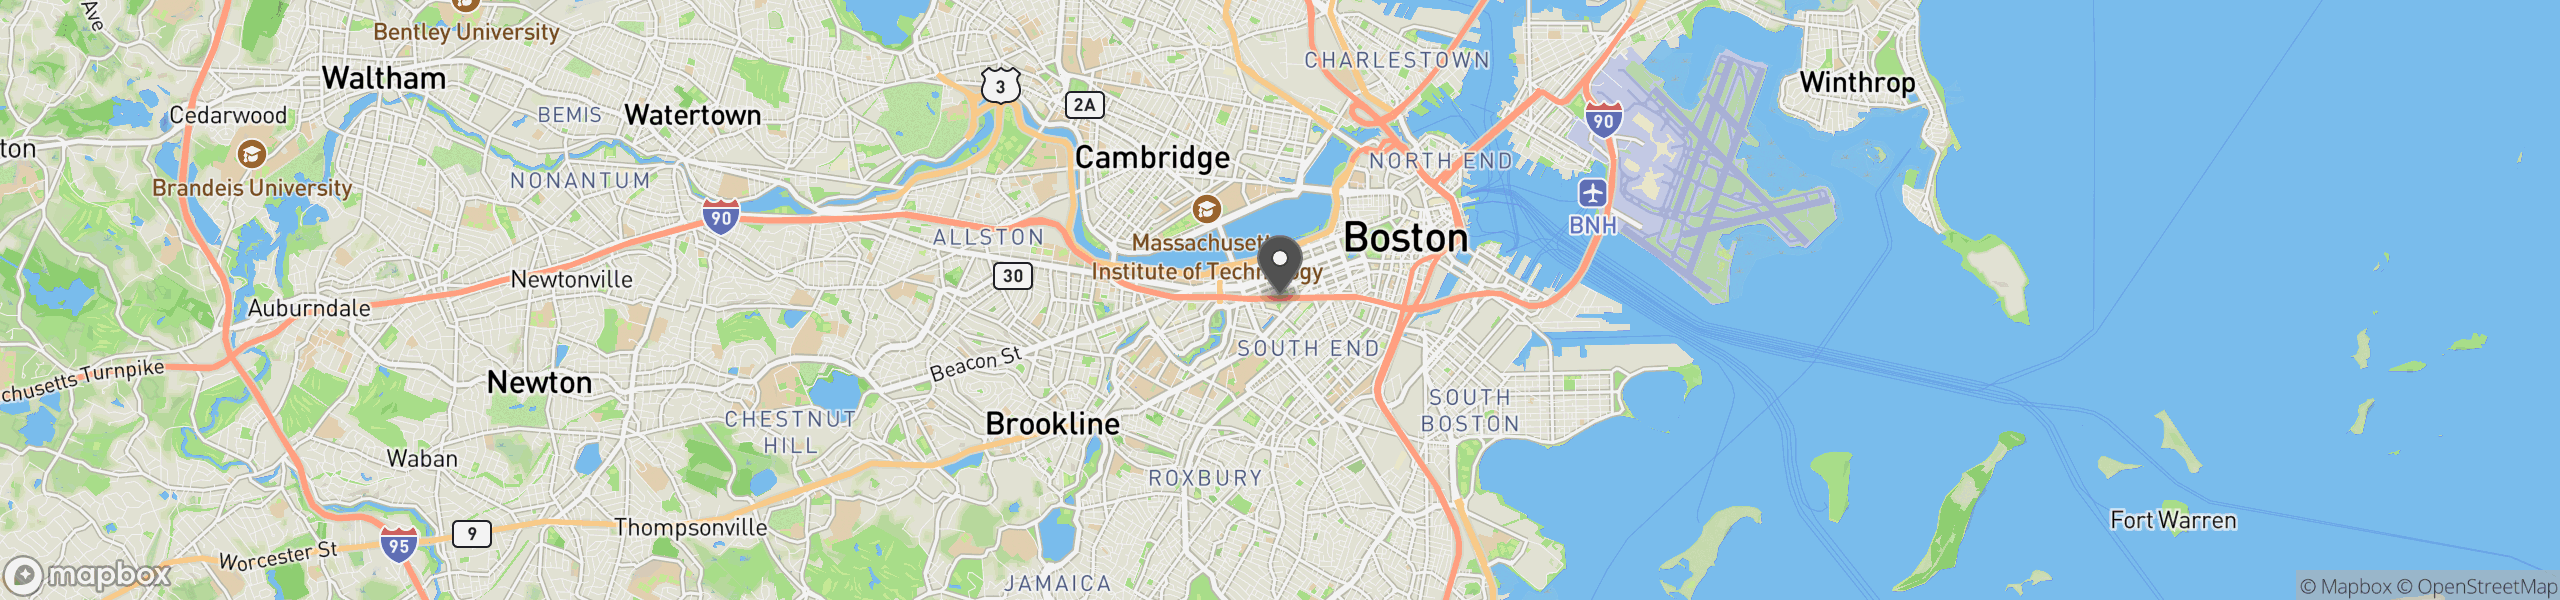 Boston, MA 02199